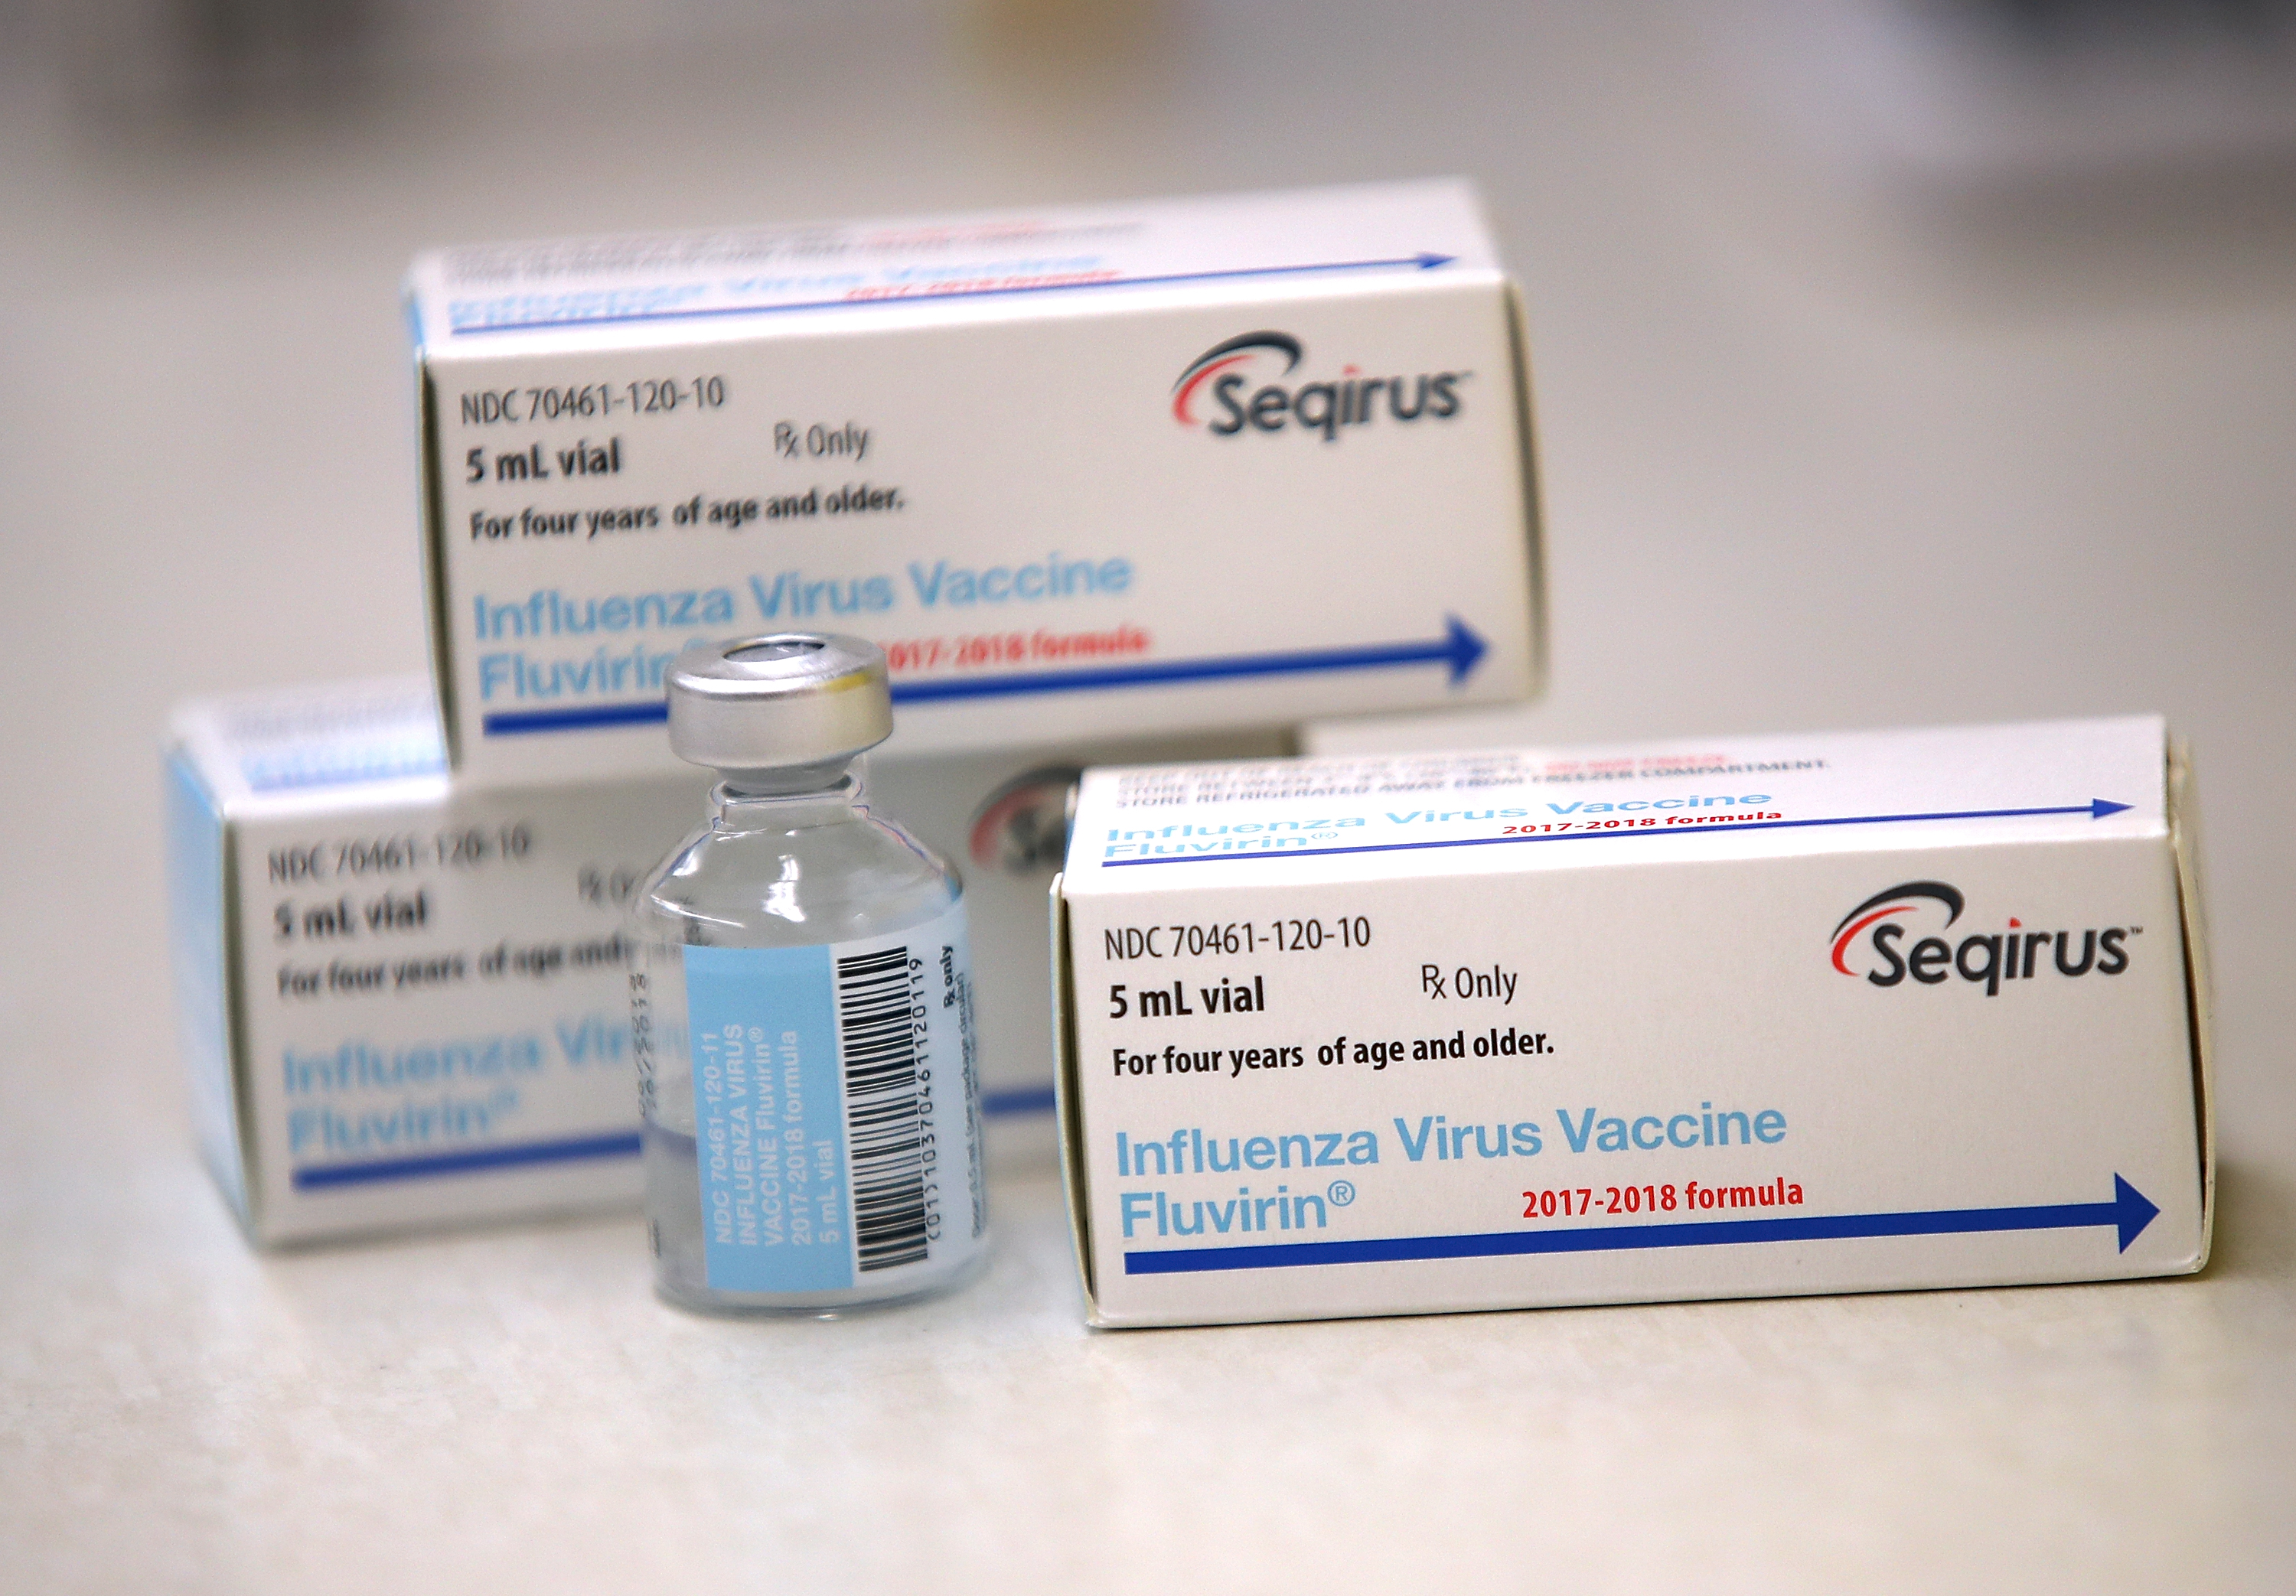 Vials of the Fluvirin influenza vaccine. (Justin Sullivan&mdash;Getty Images)